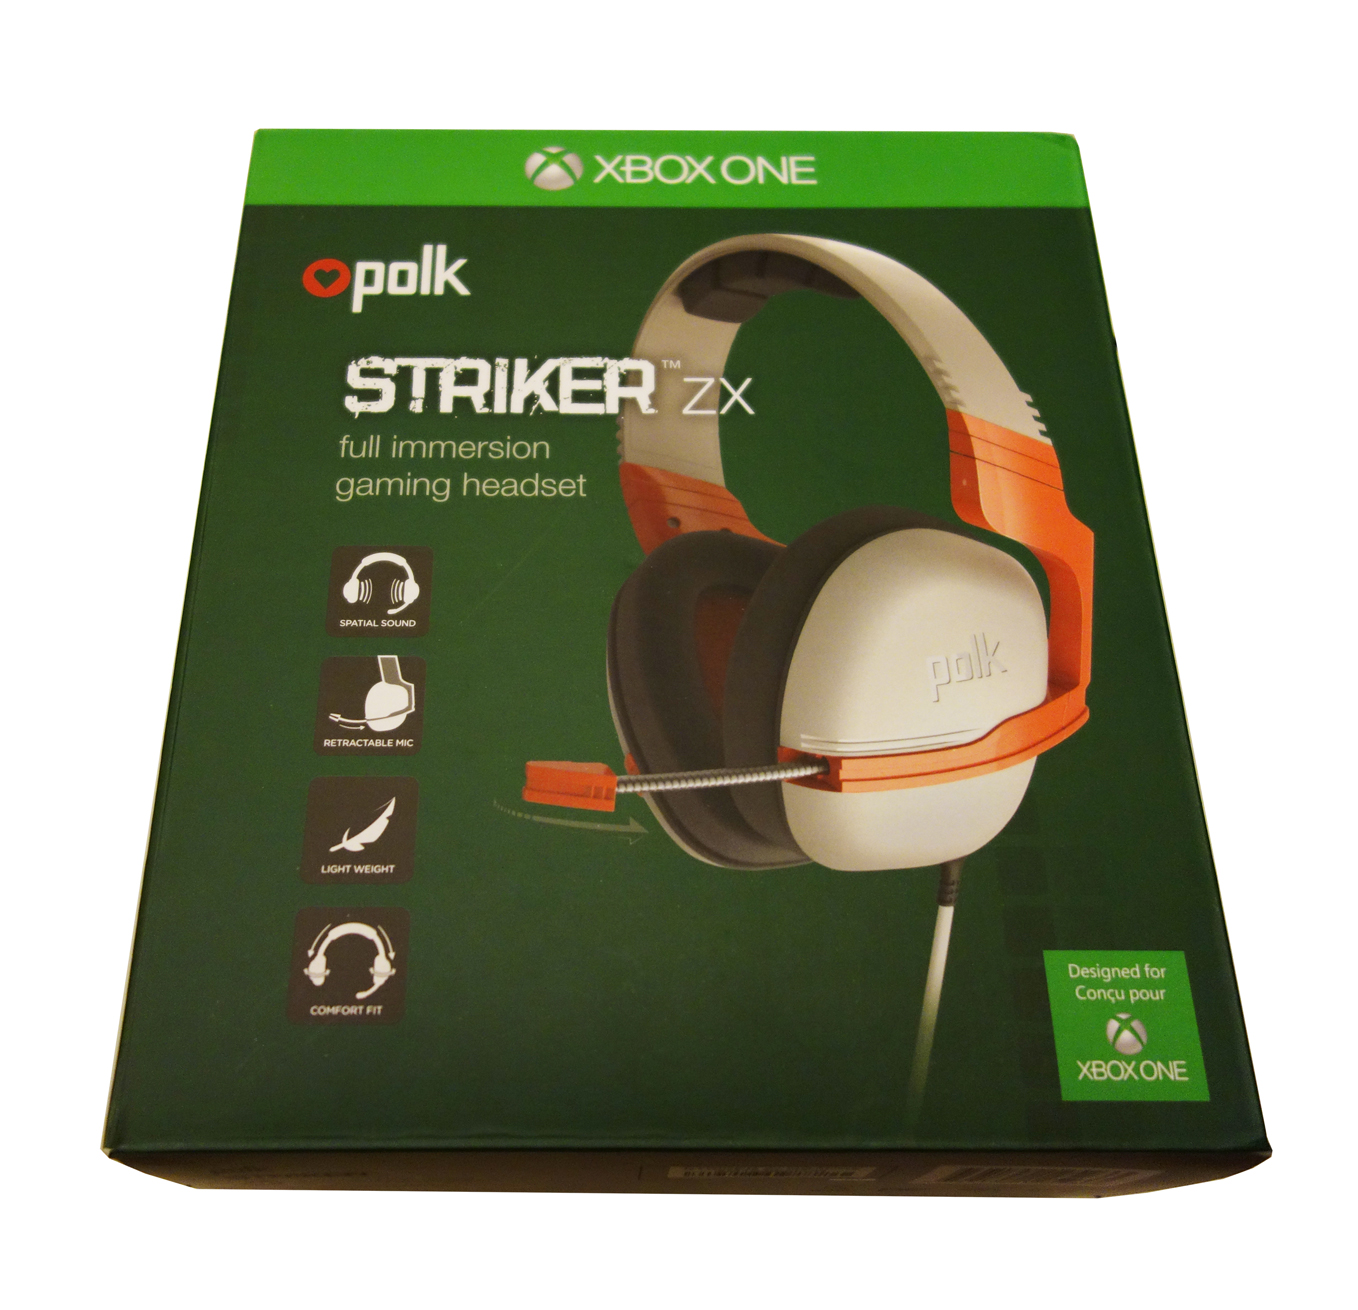 Polk Striker ZX box front